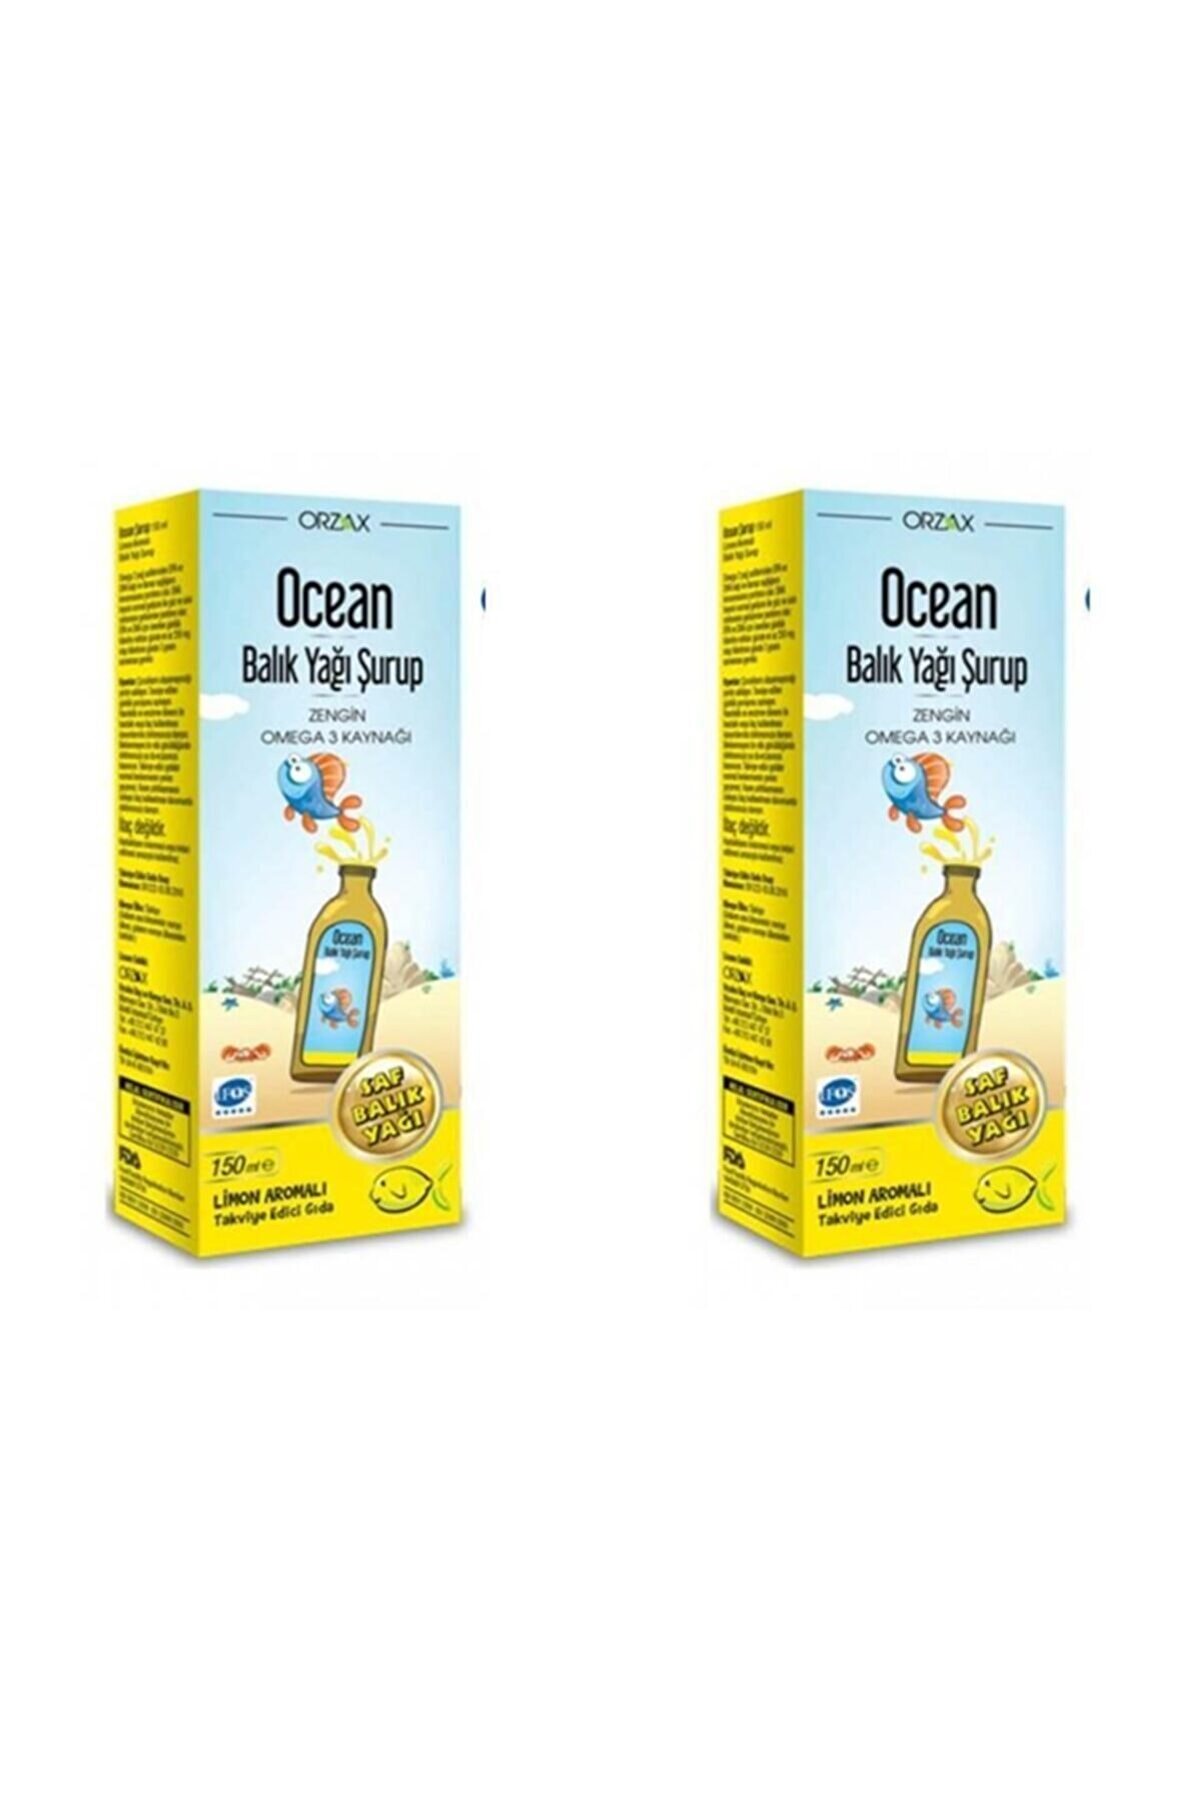 Ocean Balık Yağı Şurubu Limon Aromalı 150 ml 2'li Paket